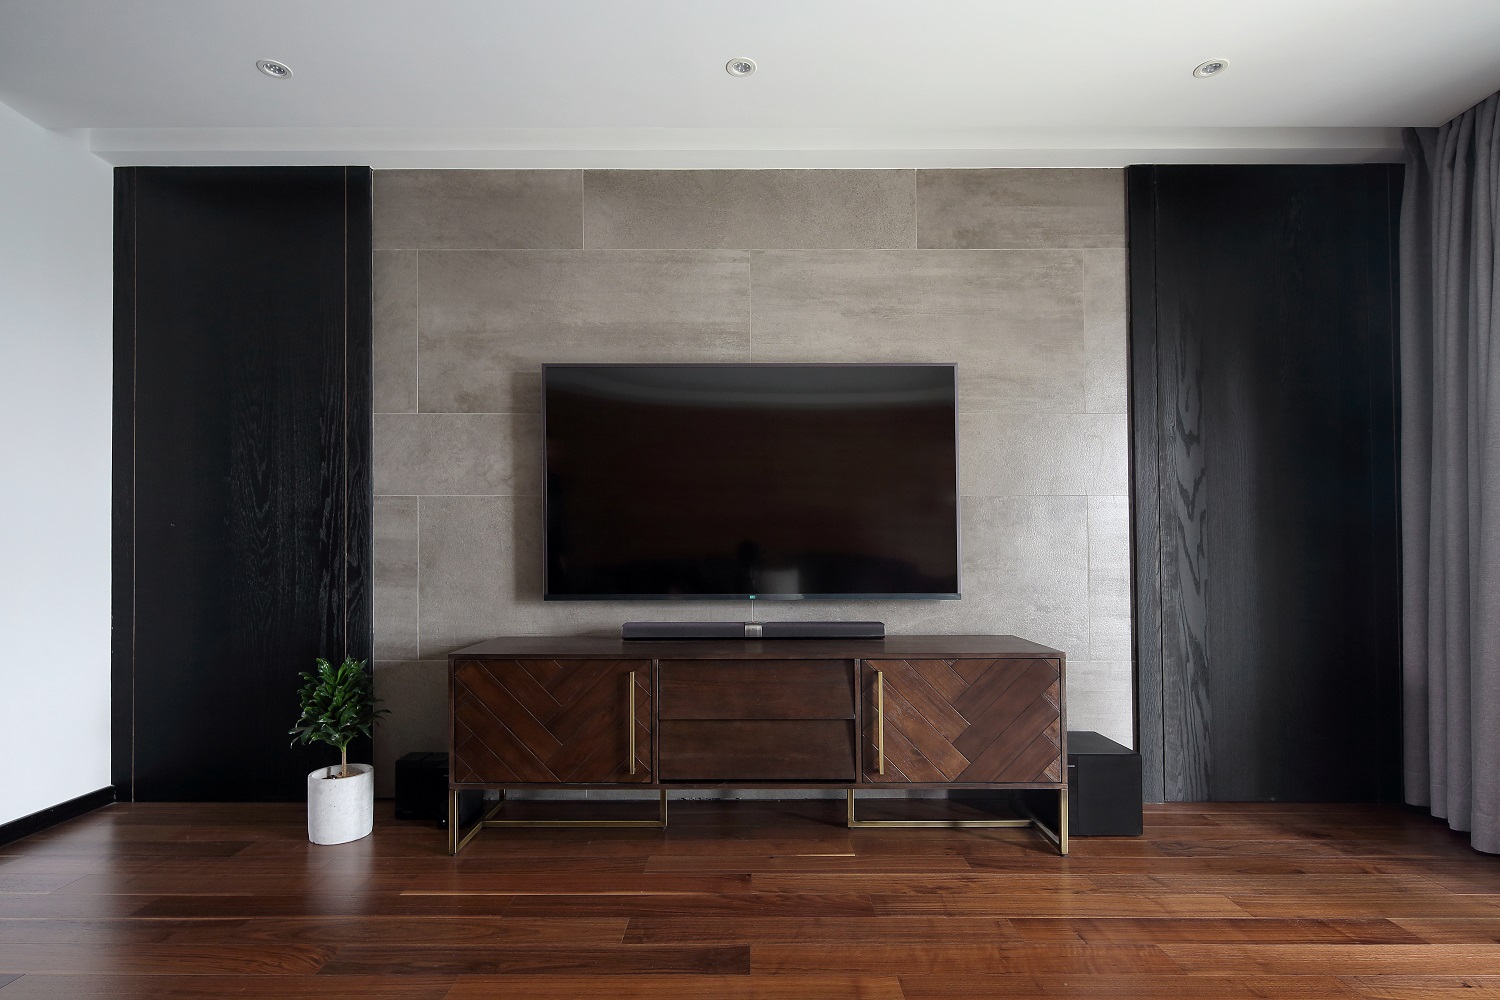 电视机背景墙简约而不简单木色与黑色木材拼接设计,尽显轻奢主义